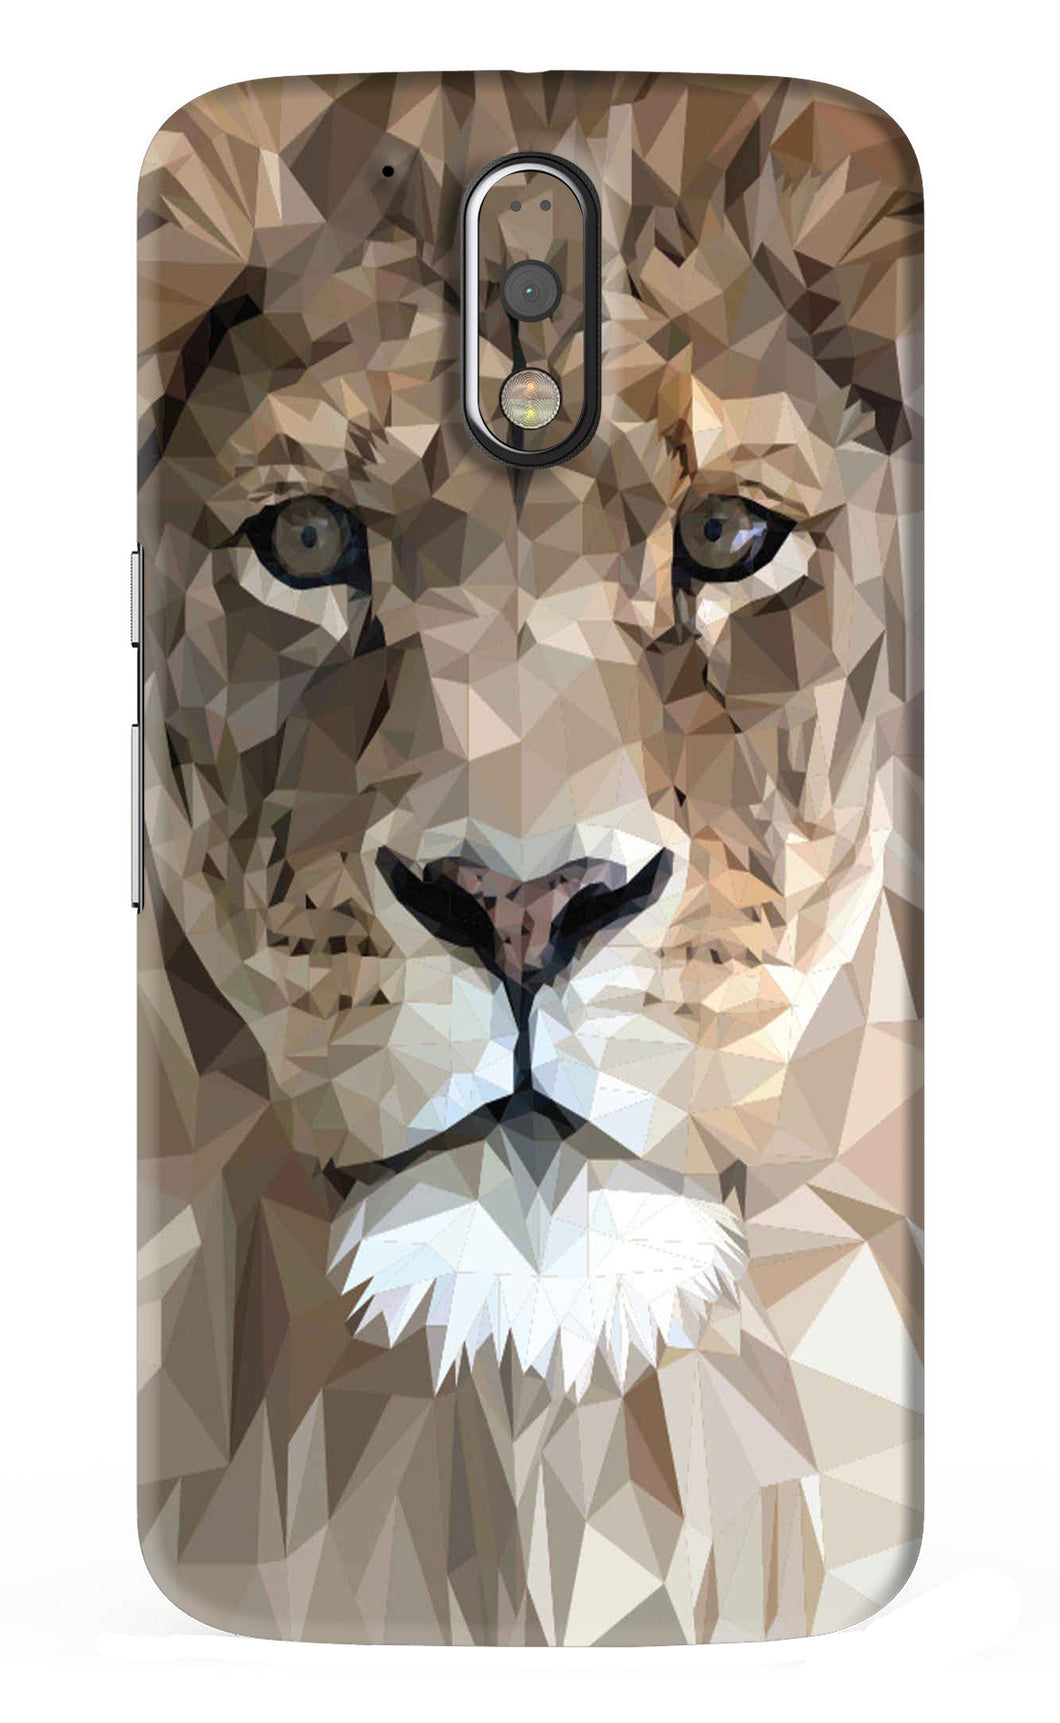 Lion Art Motorola Moto G4 Plus Back Skin Wrap